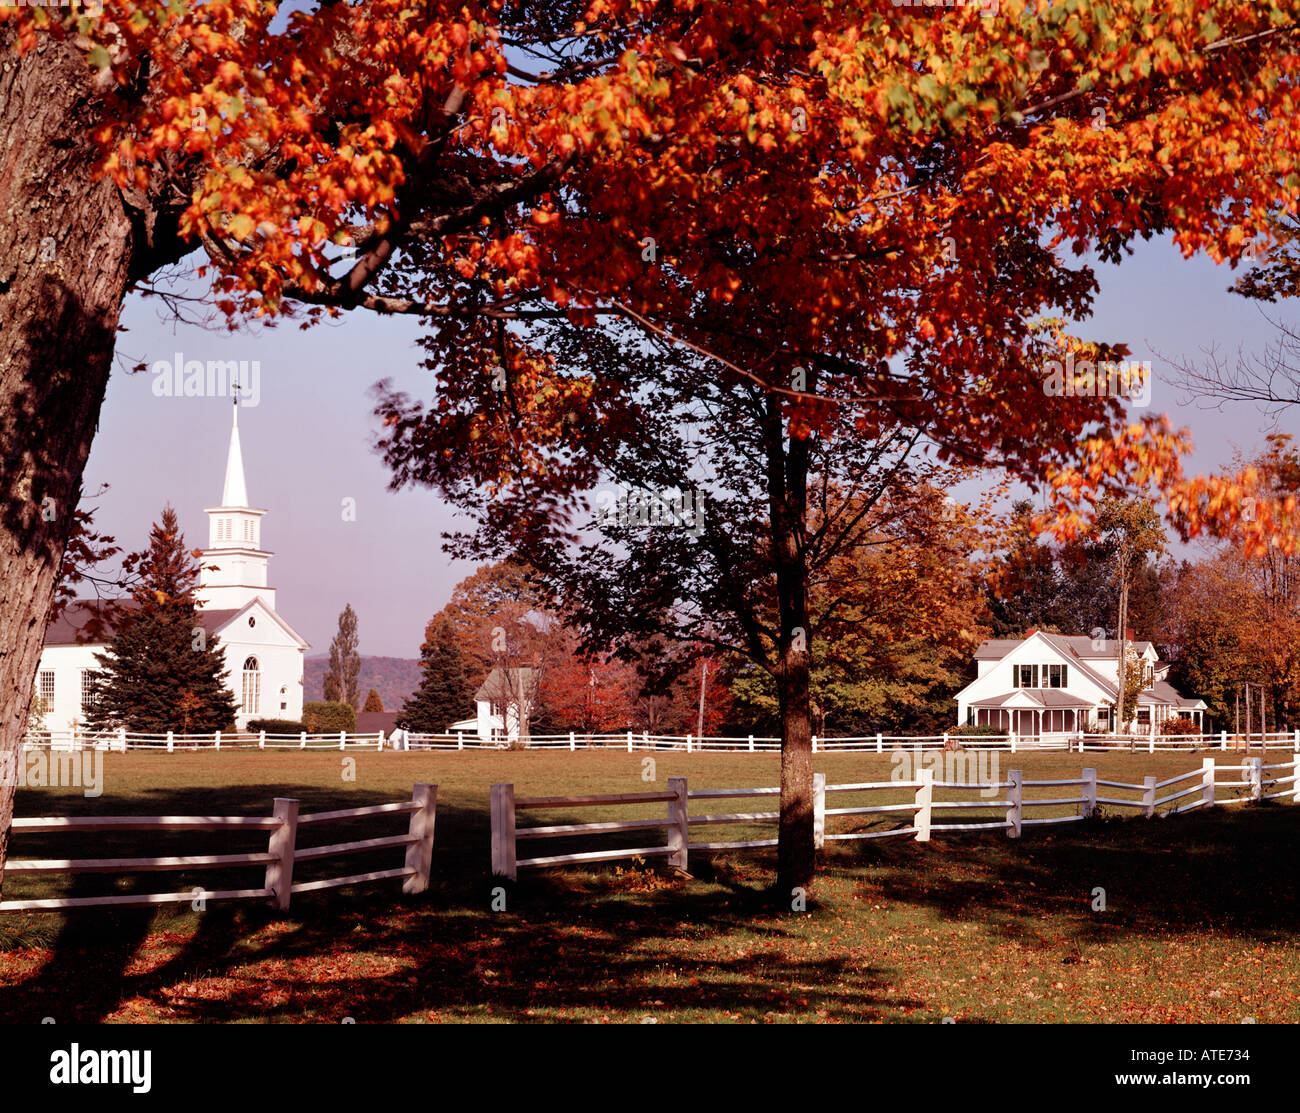 Webber häufig in Central Vermont zeigt das umzäunte Dorf grün mit kleinen Kirche und in der Nähe Häuser Duruing Herbst Stockfoto